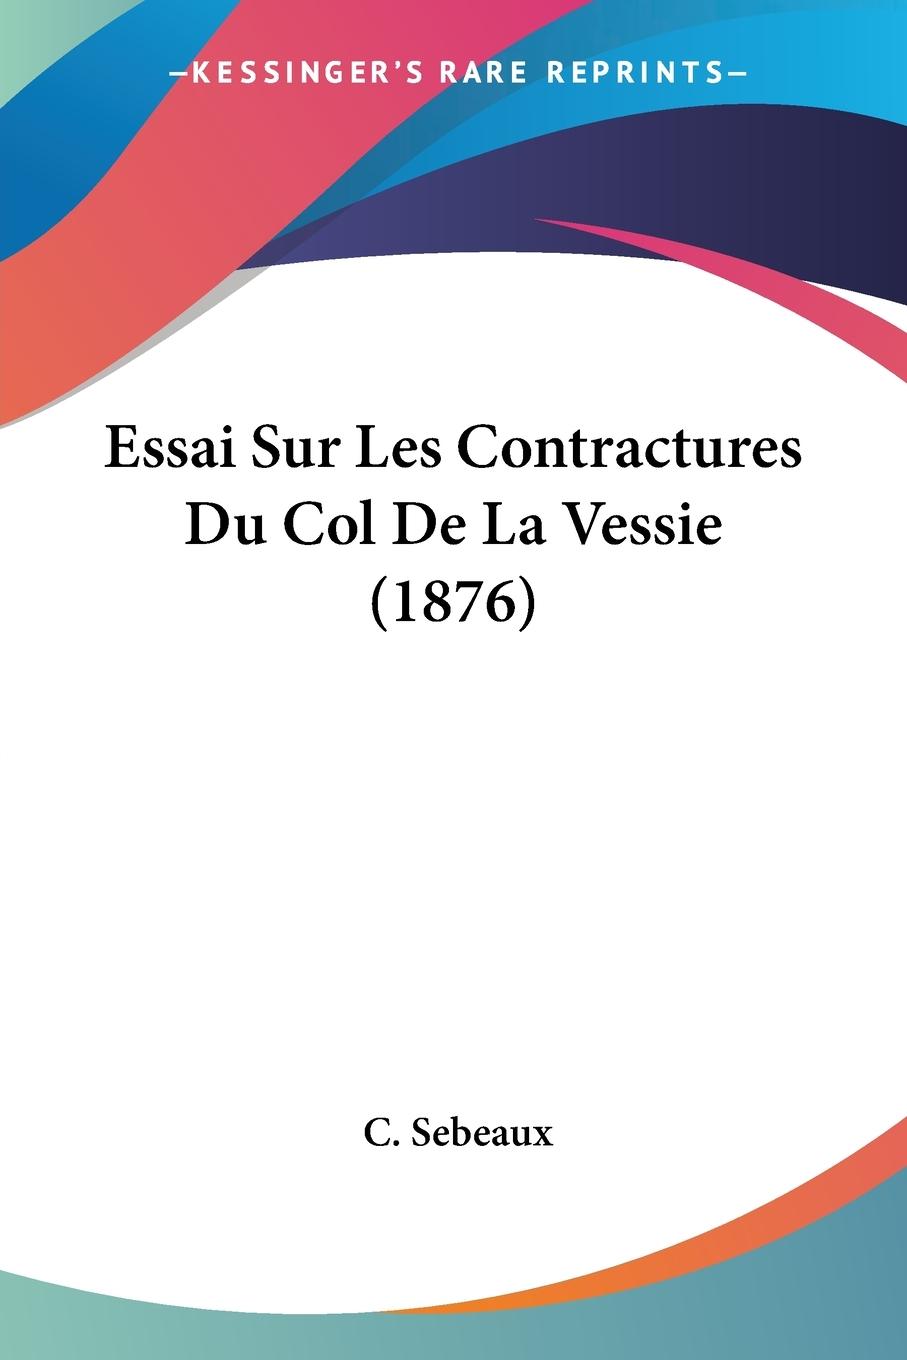 Essai Sur Les Contractures Du Col De La Vessie (1876) - Sebeaux, C.